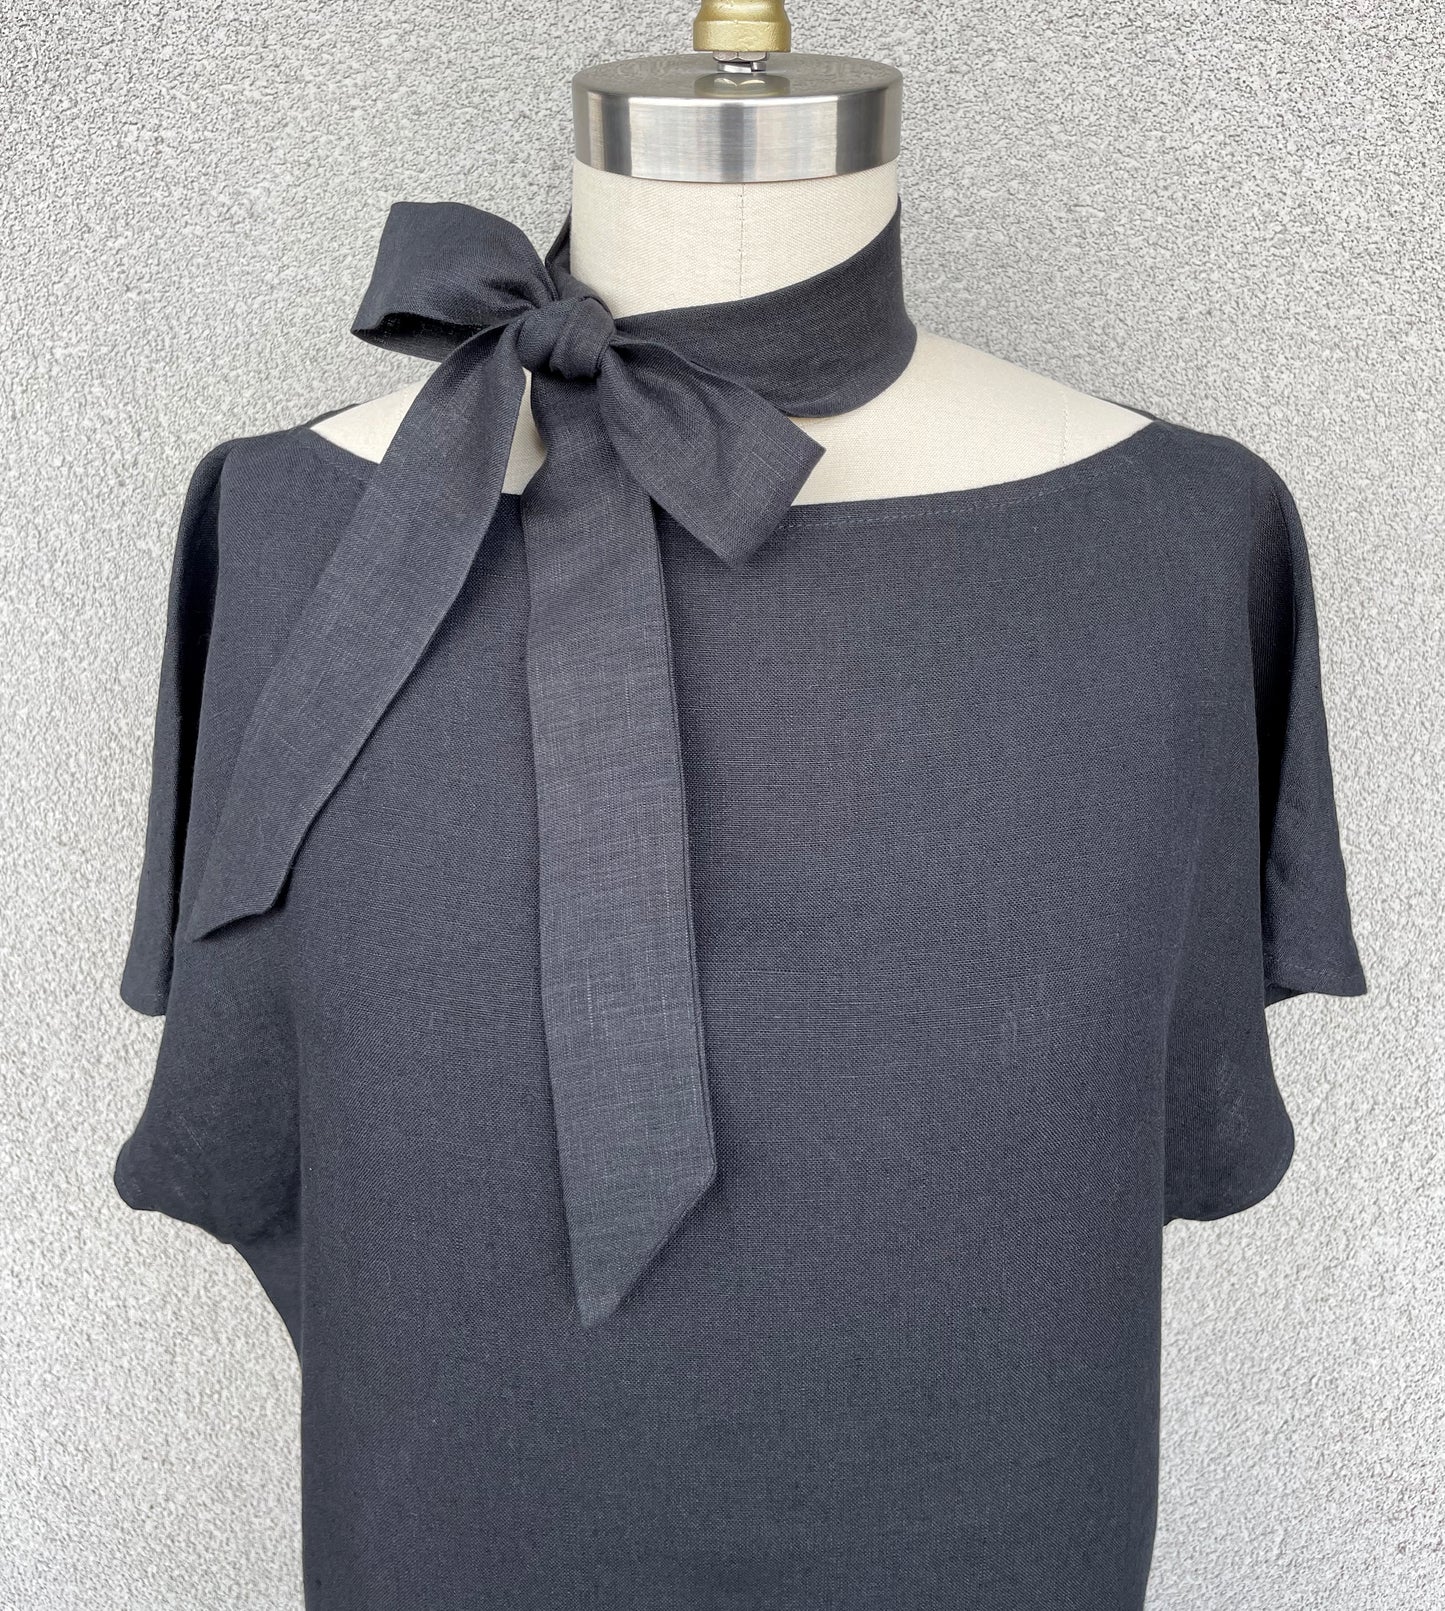 Black Linen Skinny Scarf for Women & Men, Necktie, Bow or Headband, 57" Long x 1.75" Wide